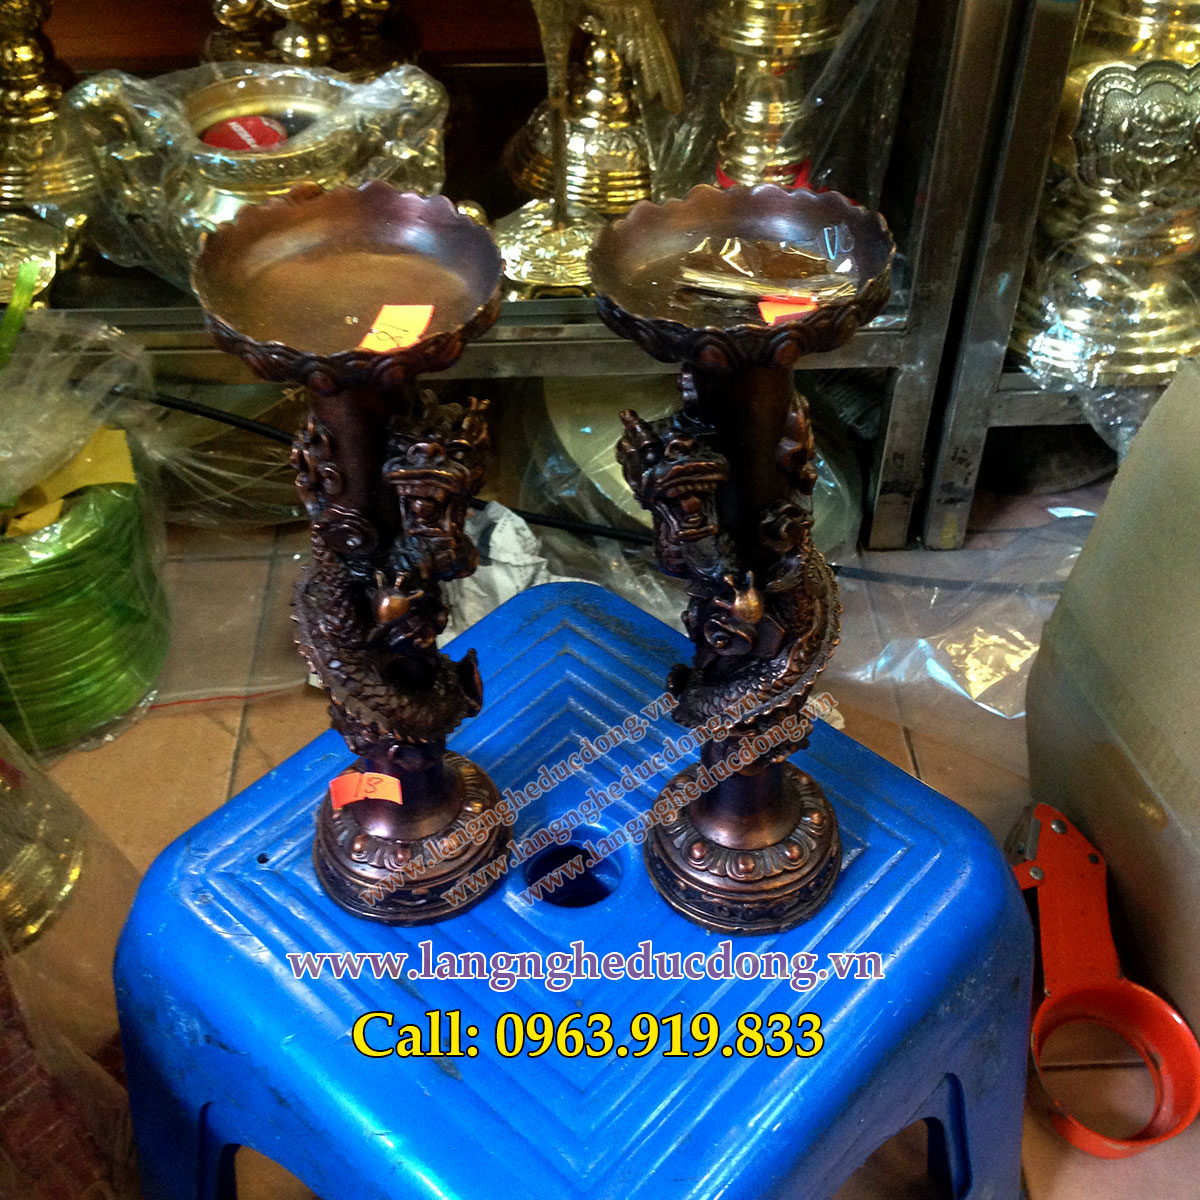 langngheducdong.vn - đôi nến thờ rồng cuốn cao 21cm